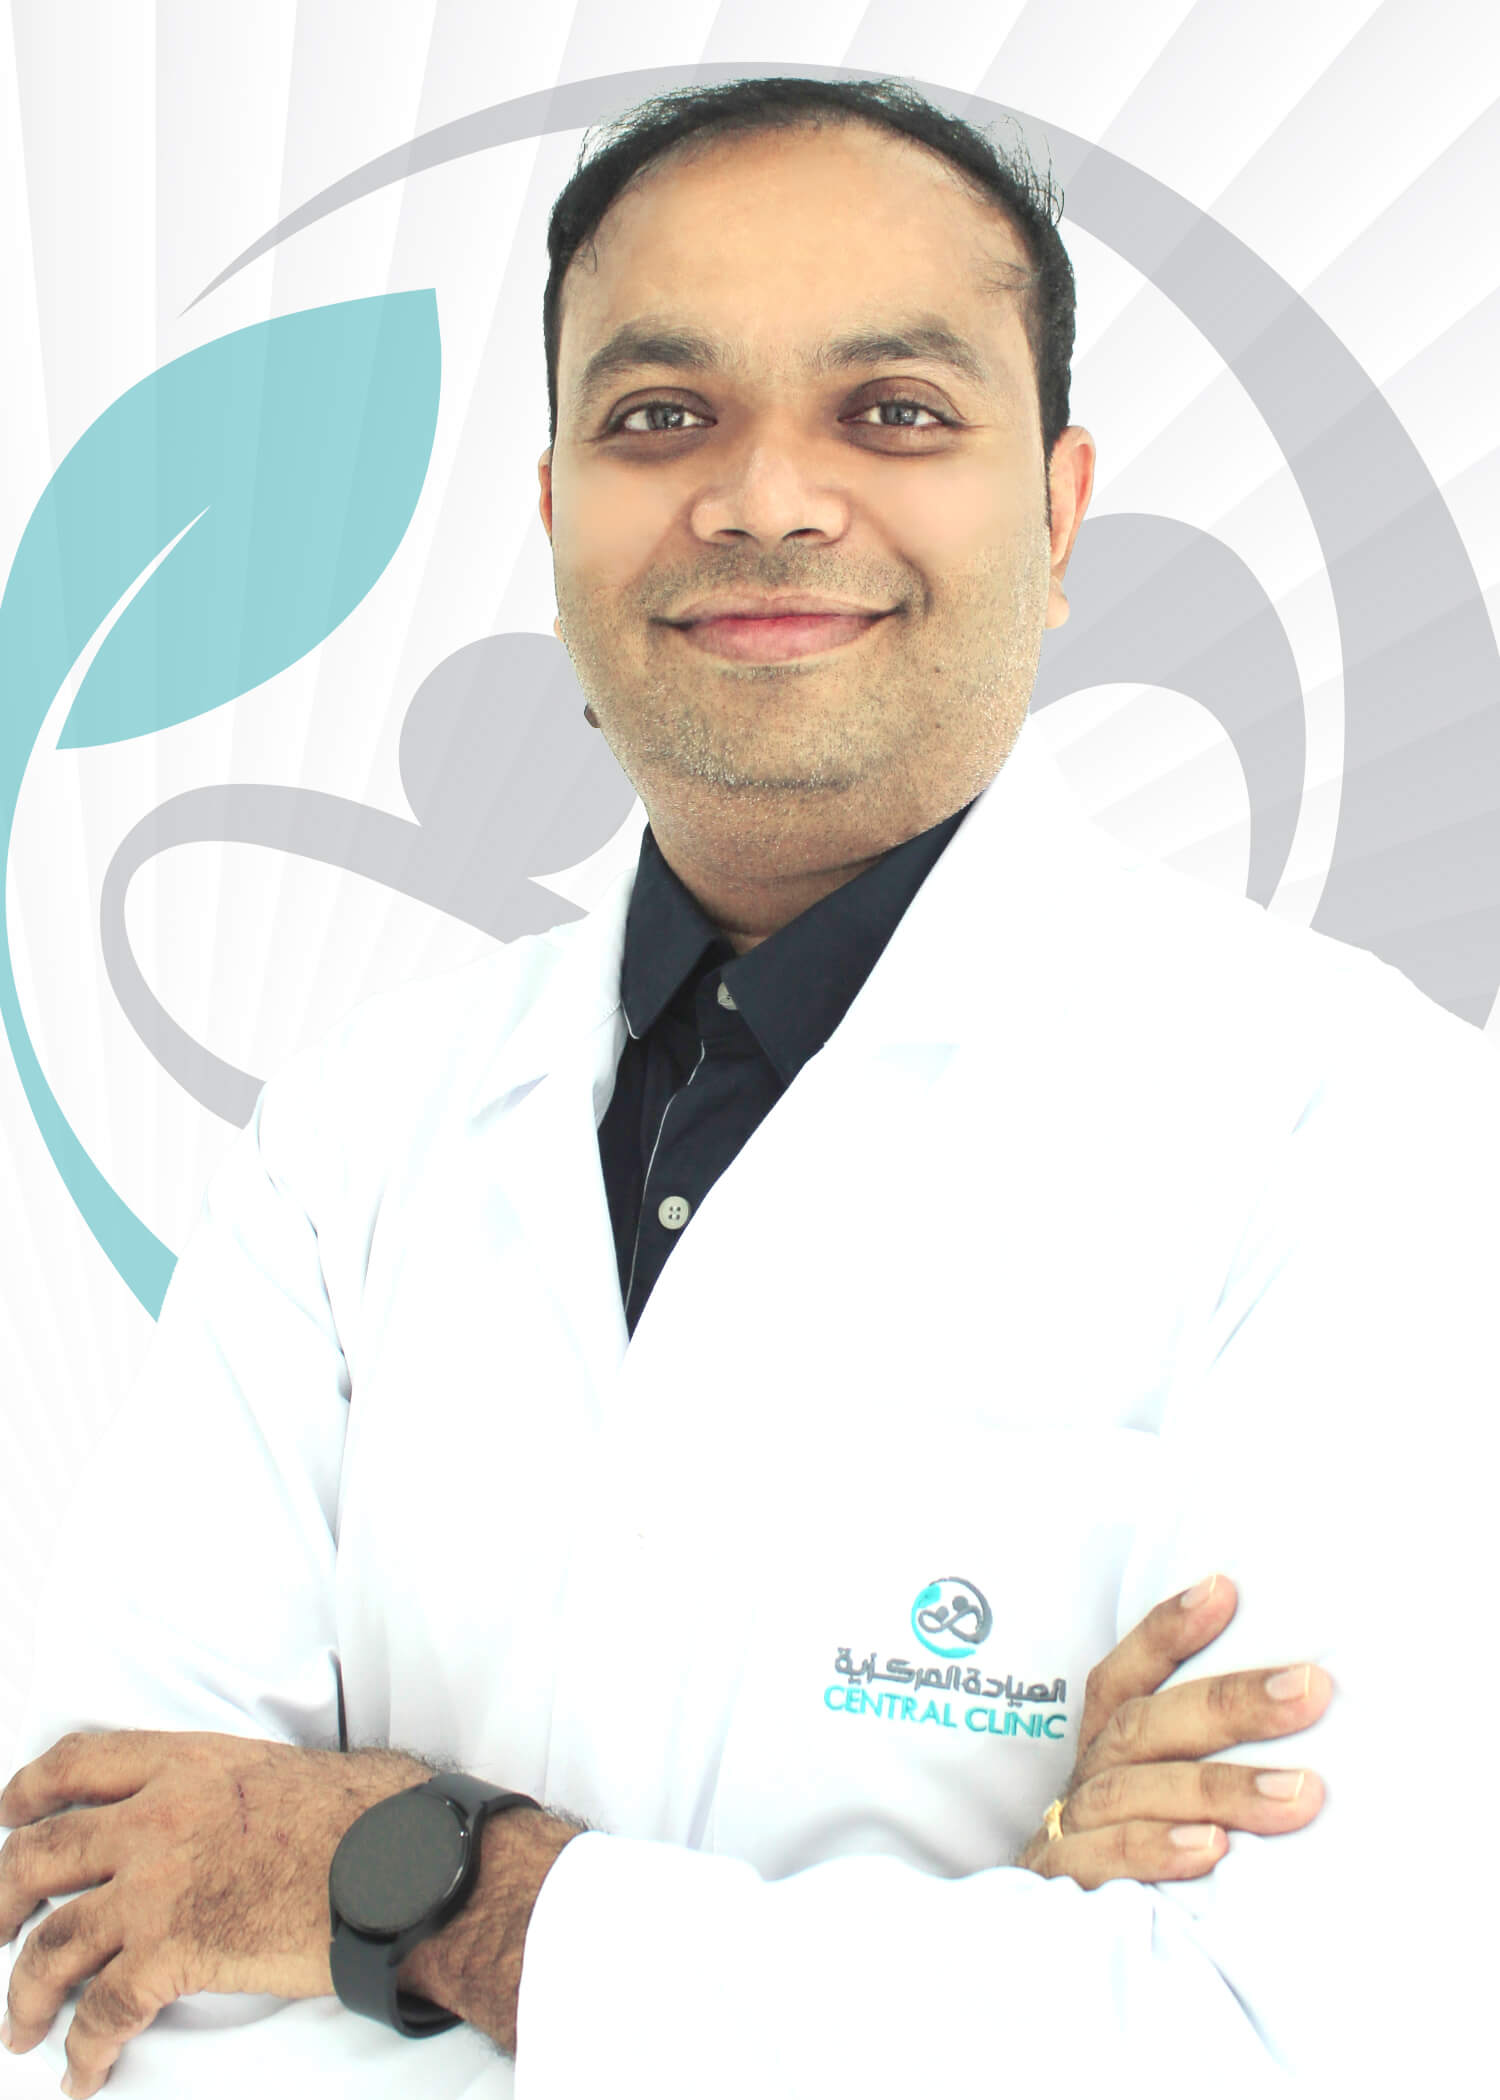 Dr. Vamshidhar Vanam